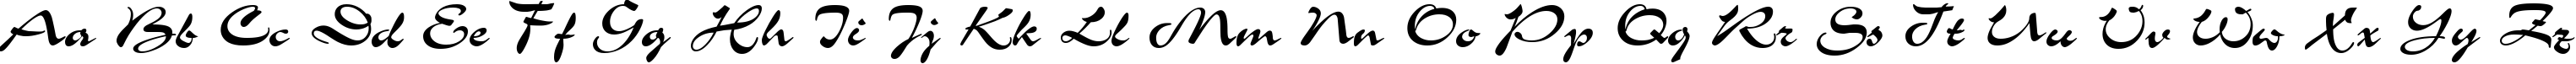 Пример написания английского алфавита шрифтом Grinya Haevy